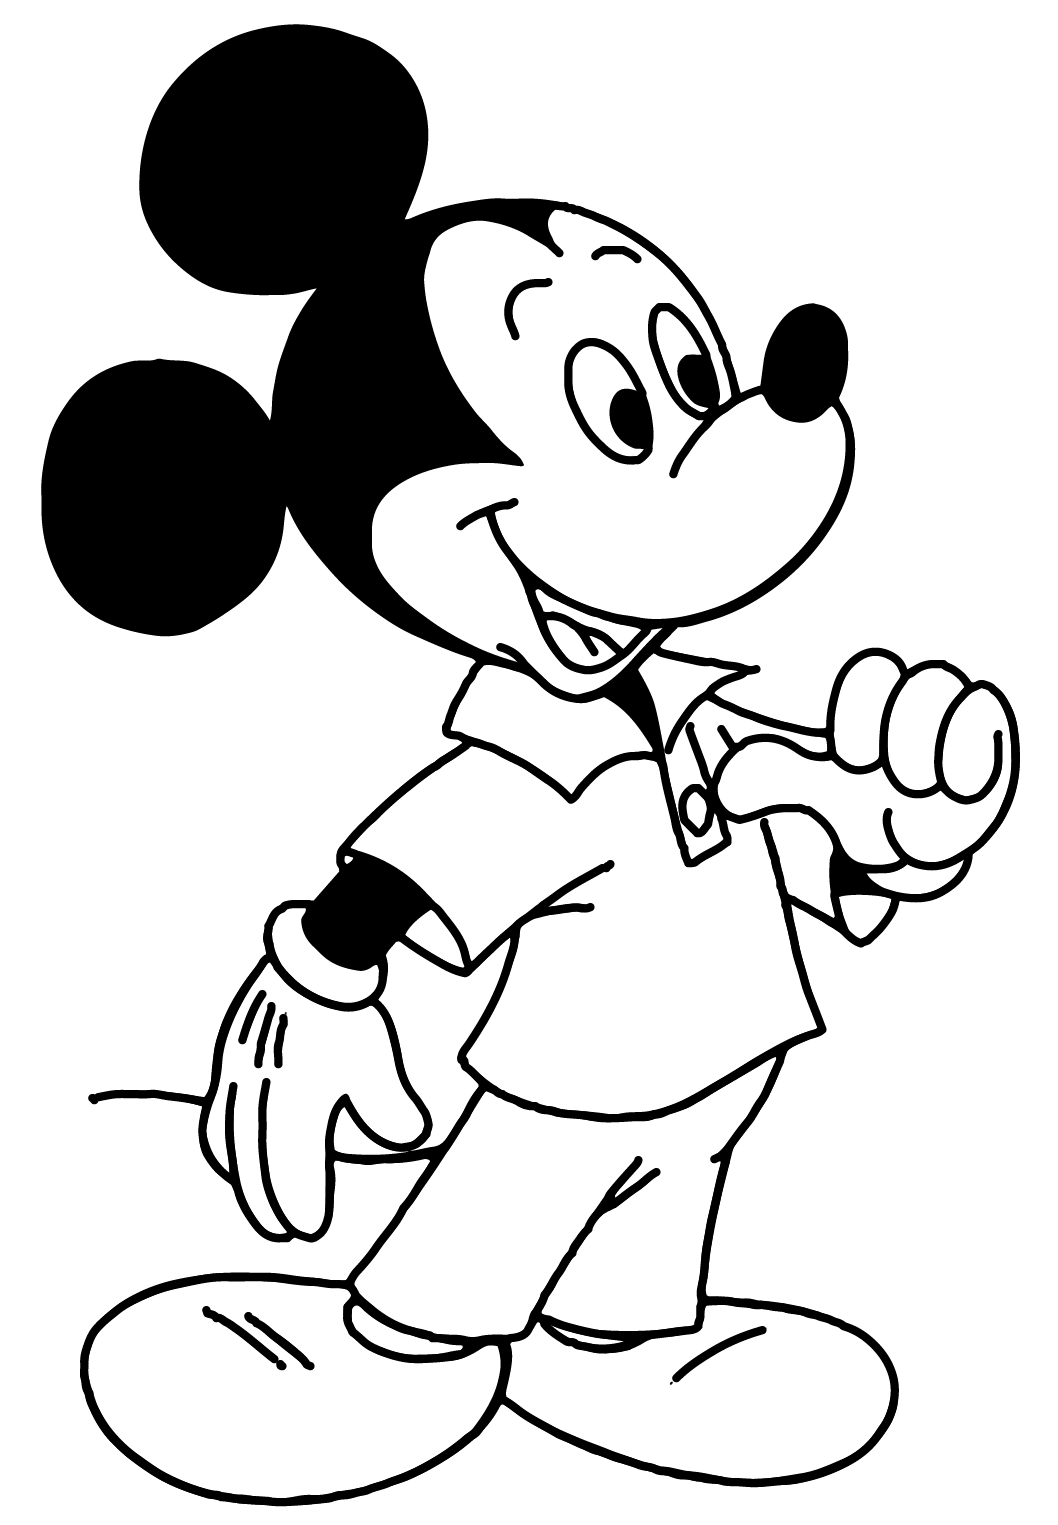 Download Páginas para colorear originales Original coloring pages: Disney's Mickey Mouse coloring pages ...